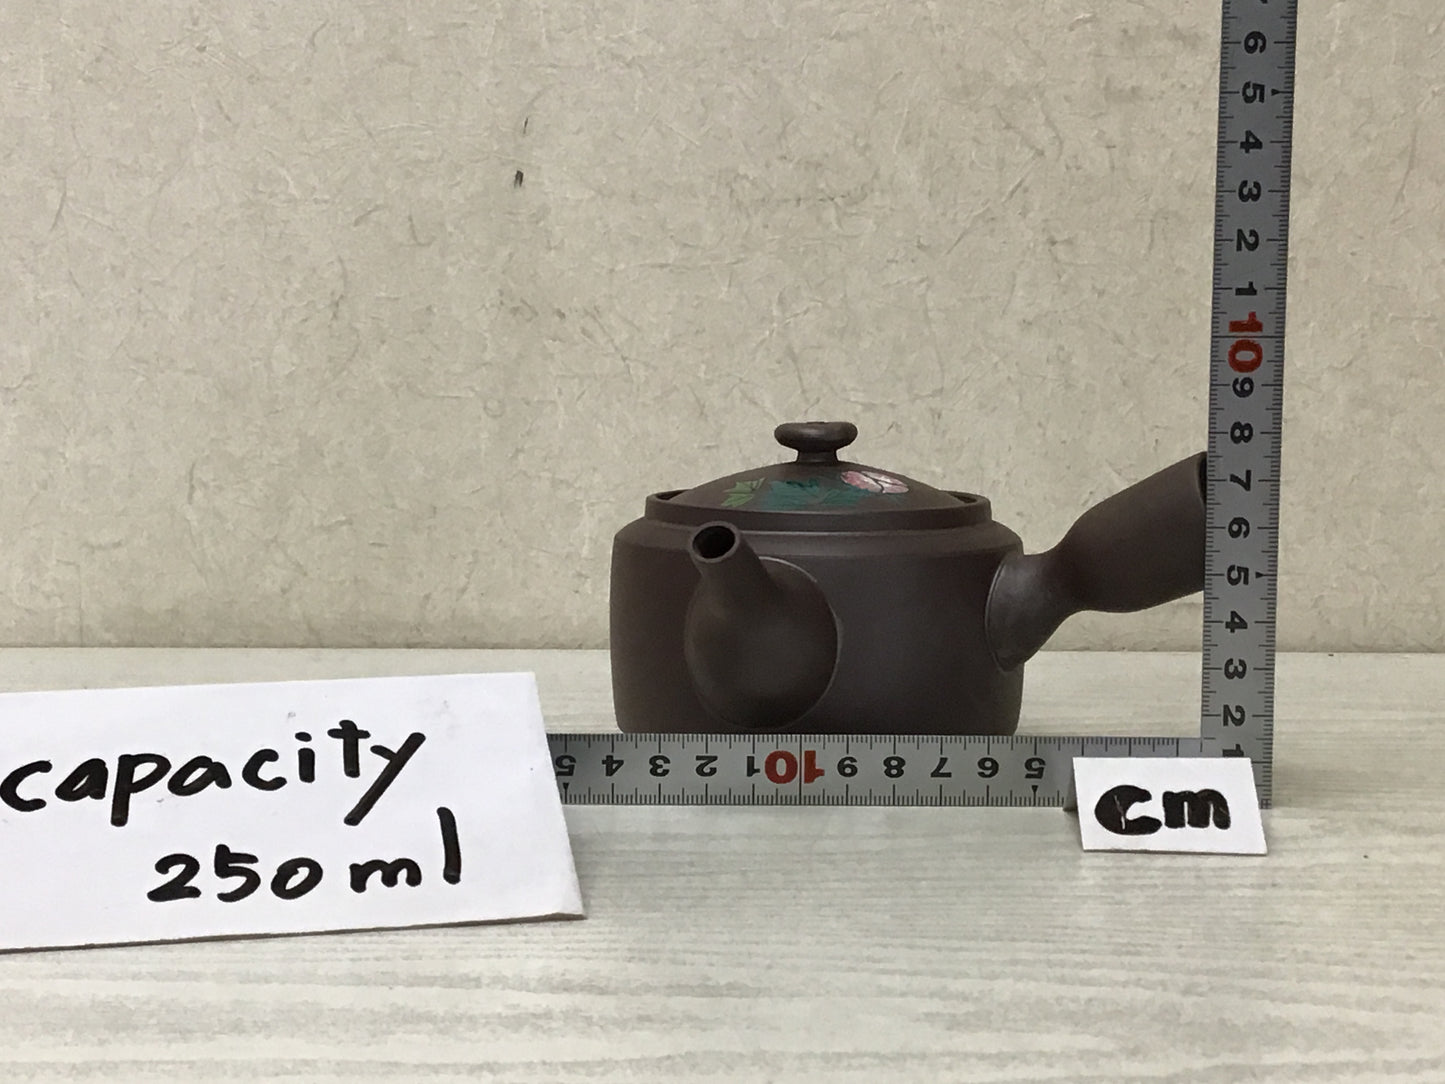 Y2826 KYUSU Banko-ware Teapot signed flower color Japan antique vintage tea pot